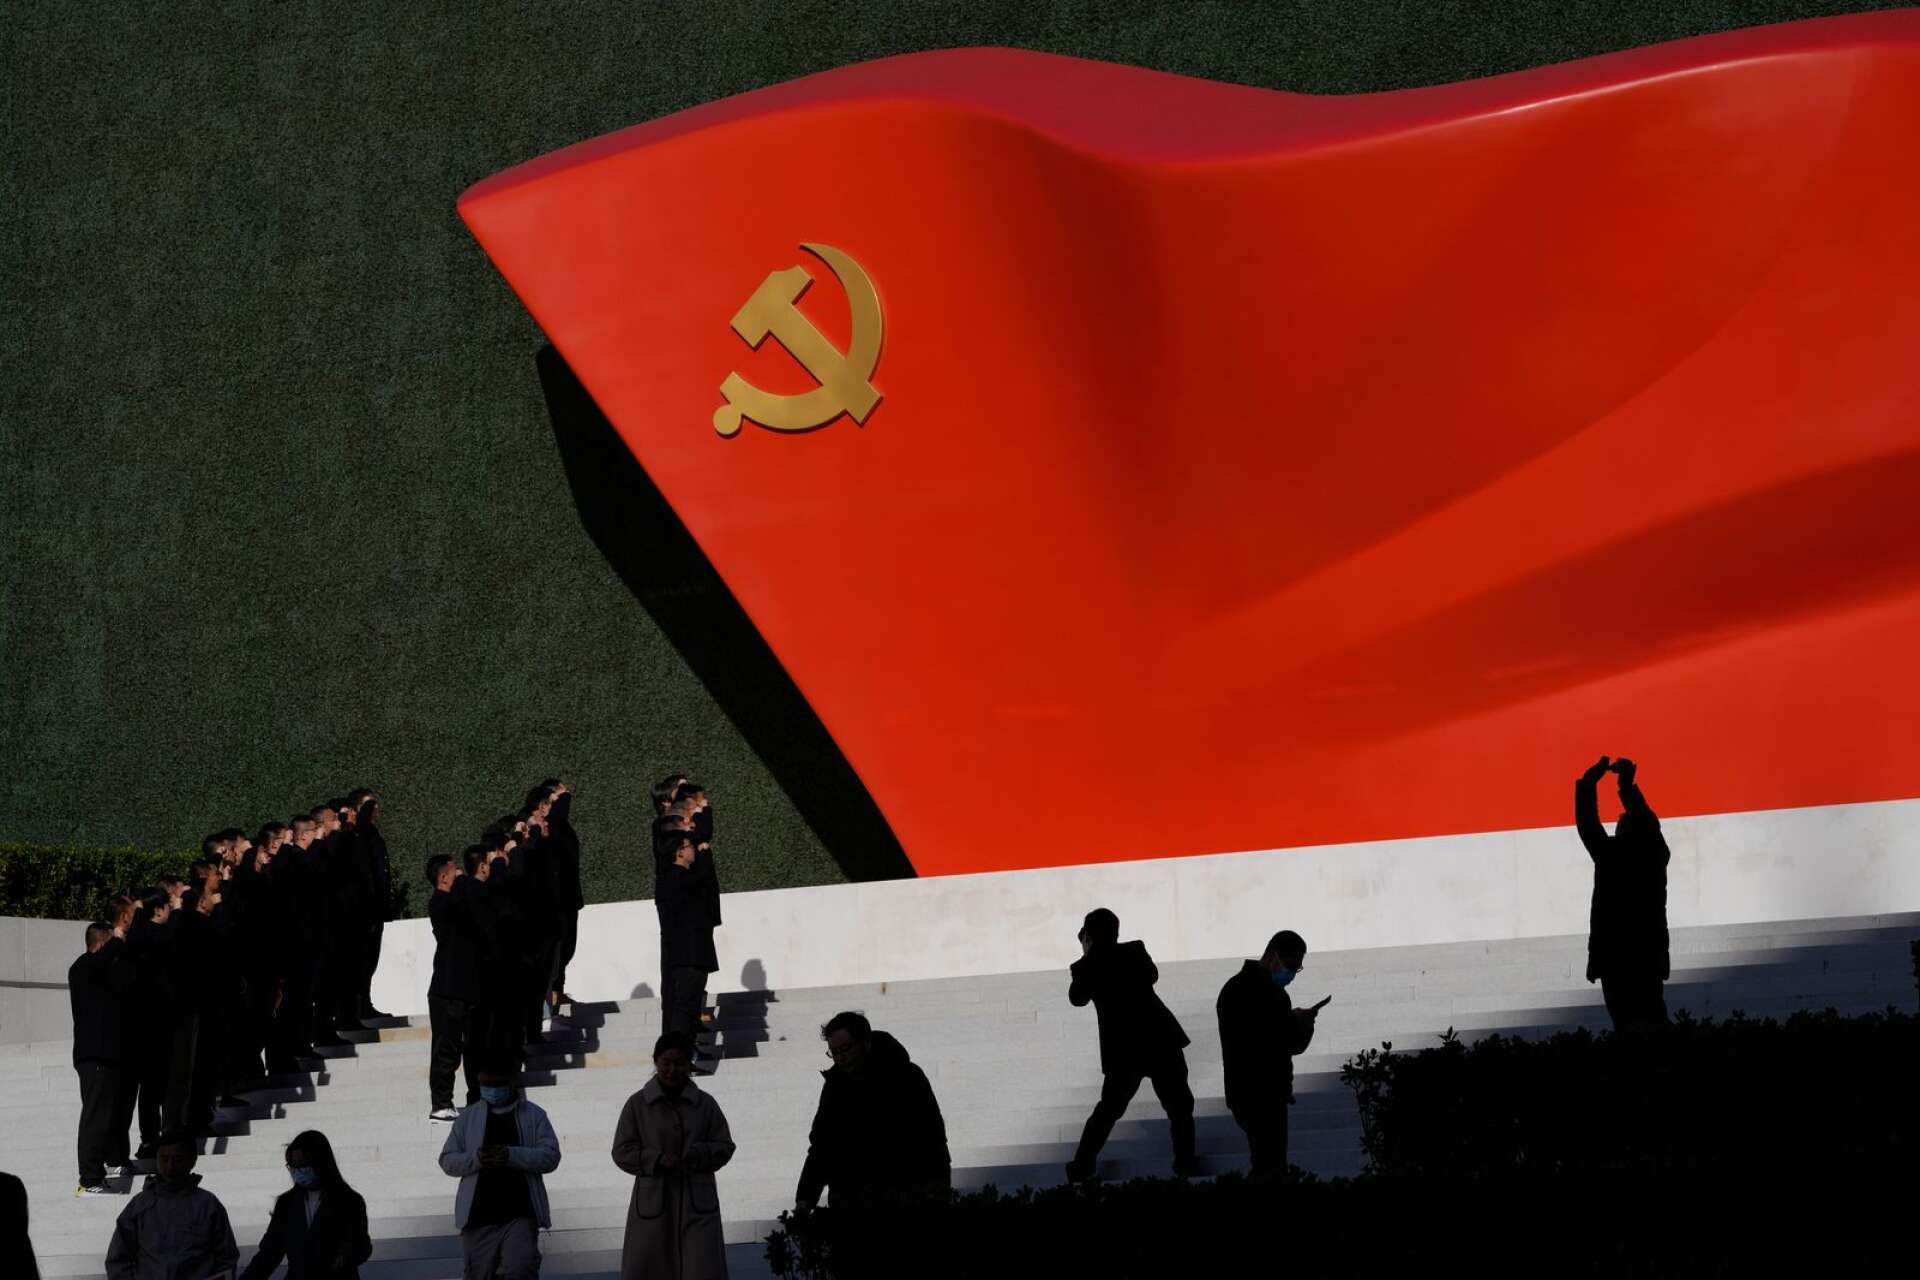 En fredlig demokratisk värld har inte plats för det kinesiska kommunistpartiet, som bygger sin makt på våld och hot, inte på folkets stöd, skriver Kristina I Kleinert.